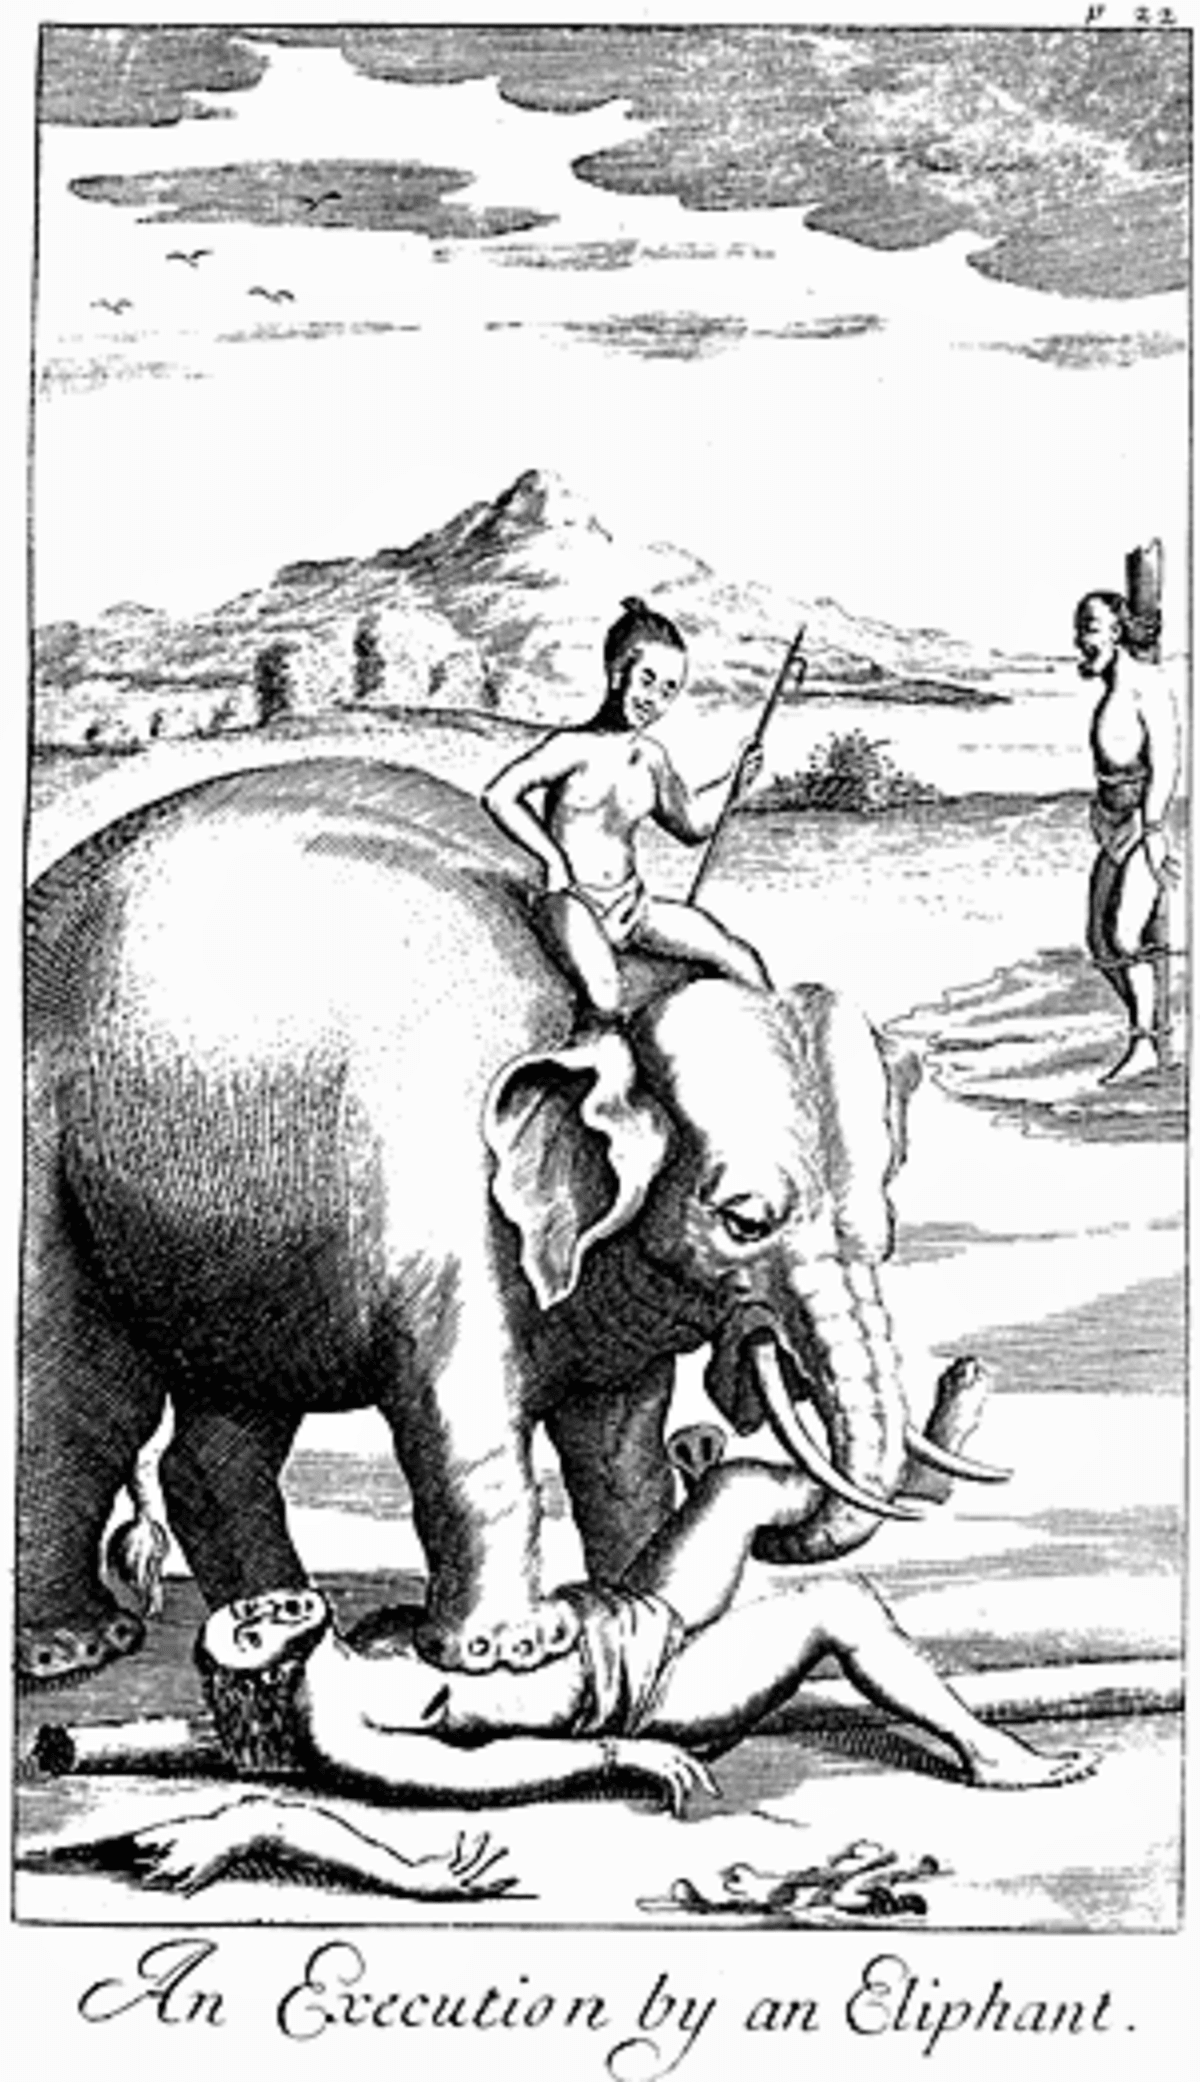 Poprava pomocí slona.